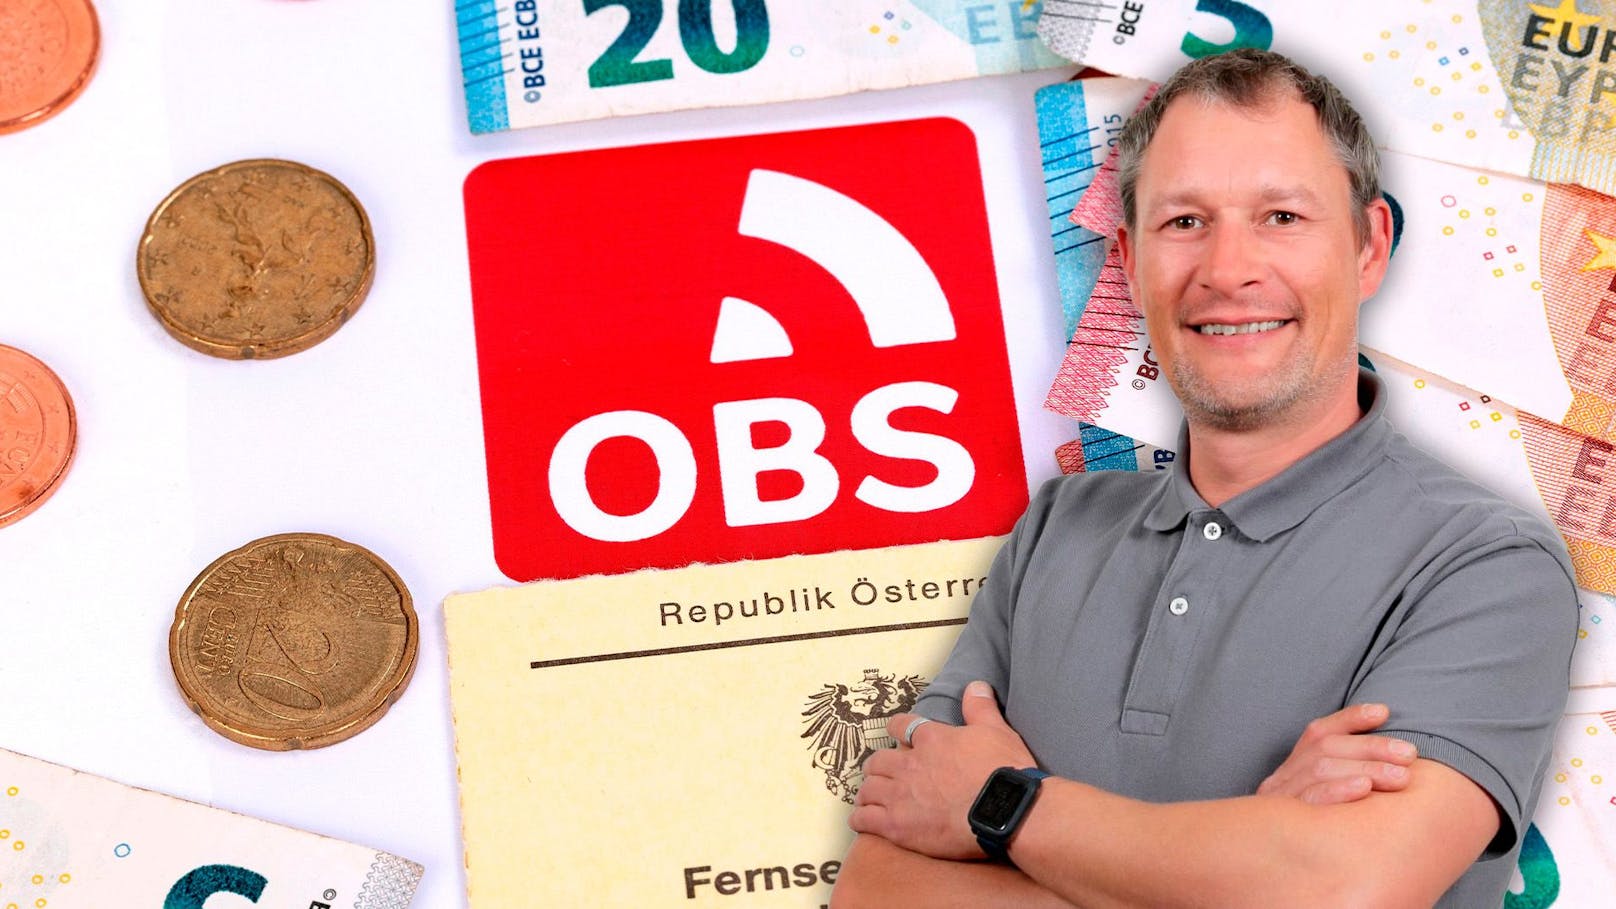 "Keine Kontodaten" – ORF bucht Mann trotzdem Geld ab